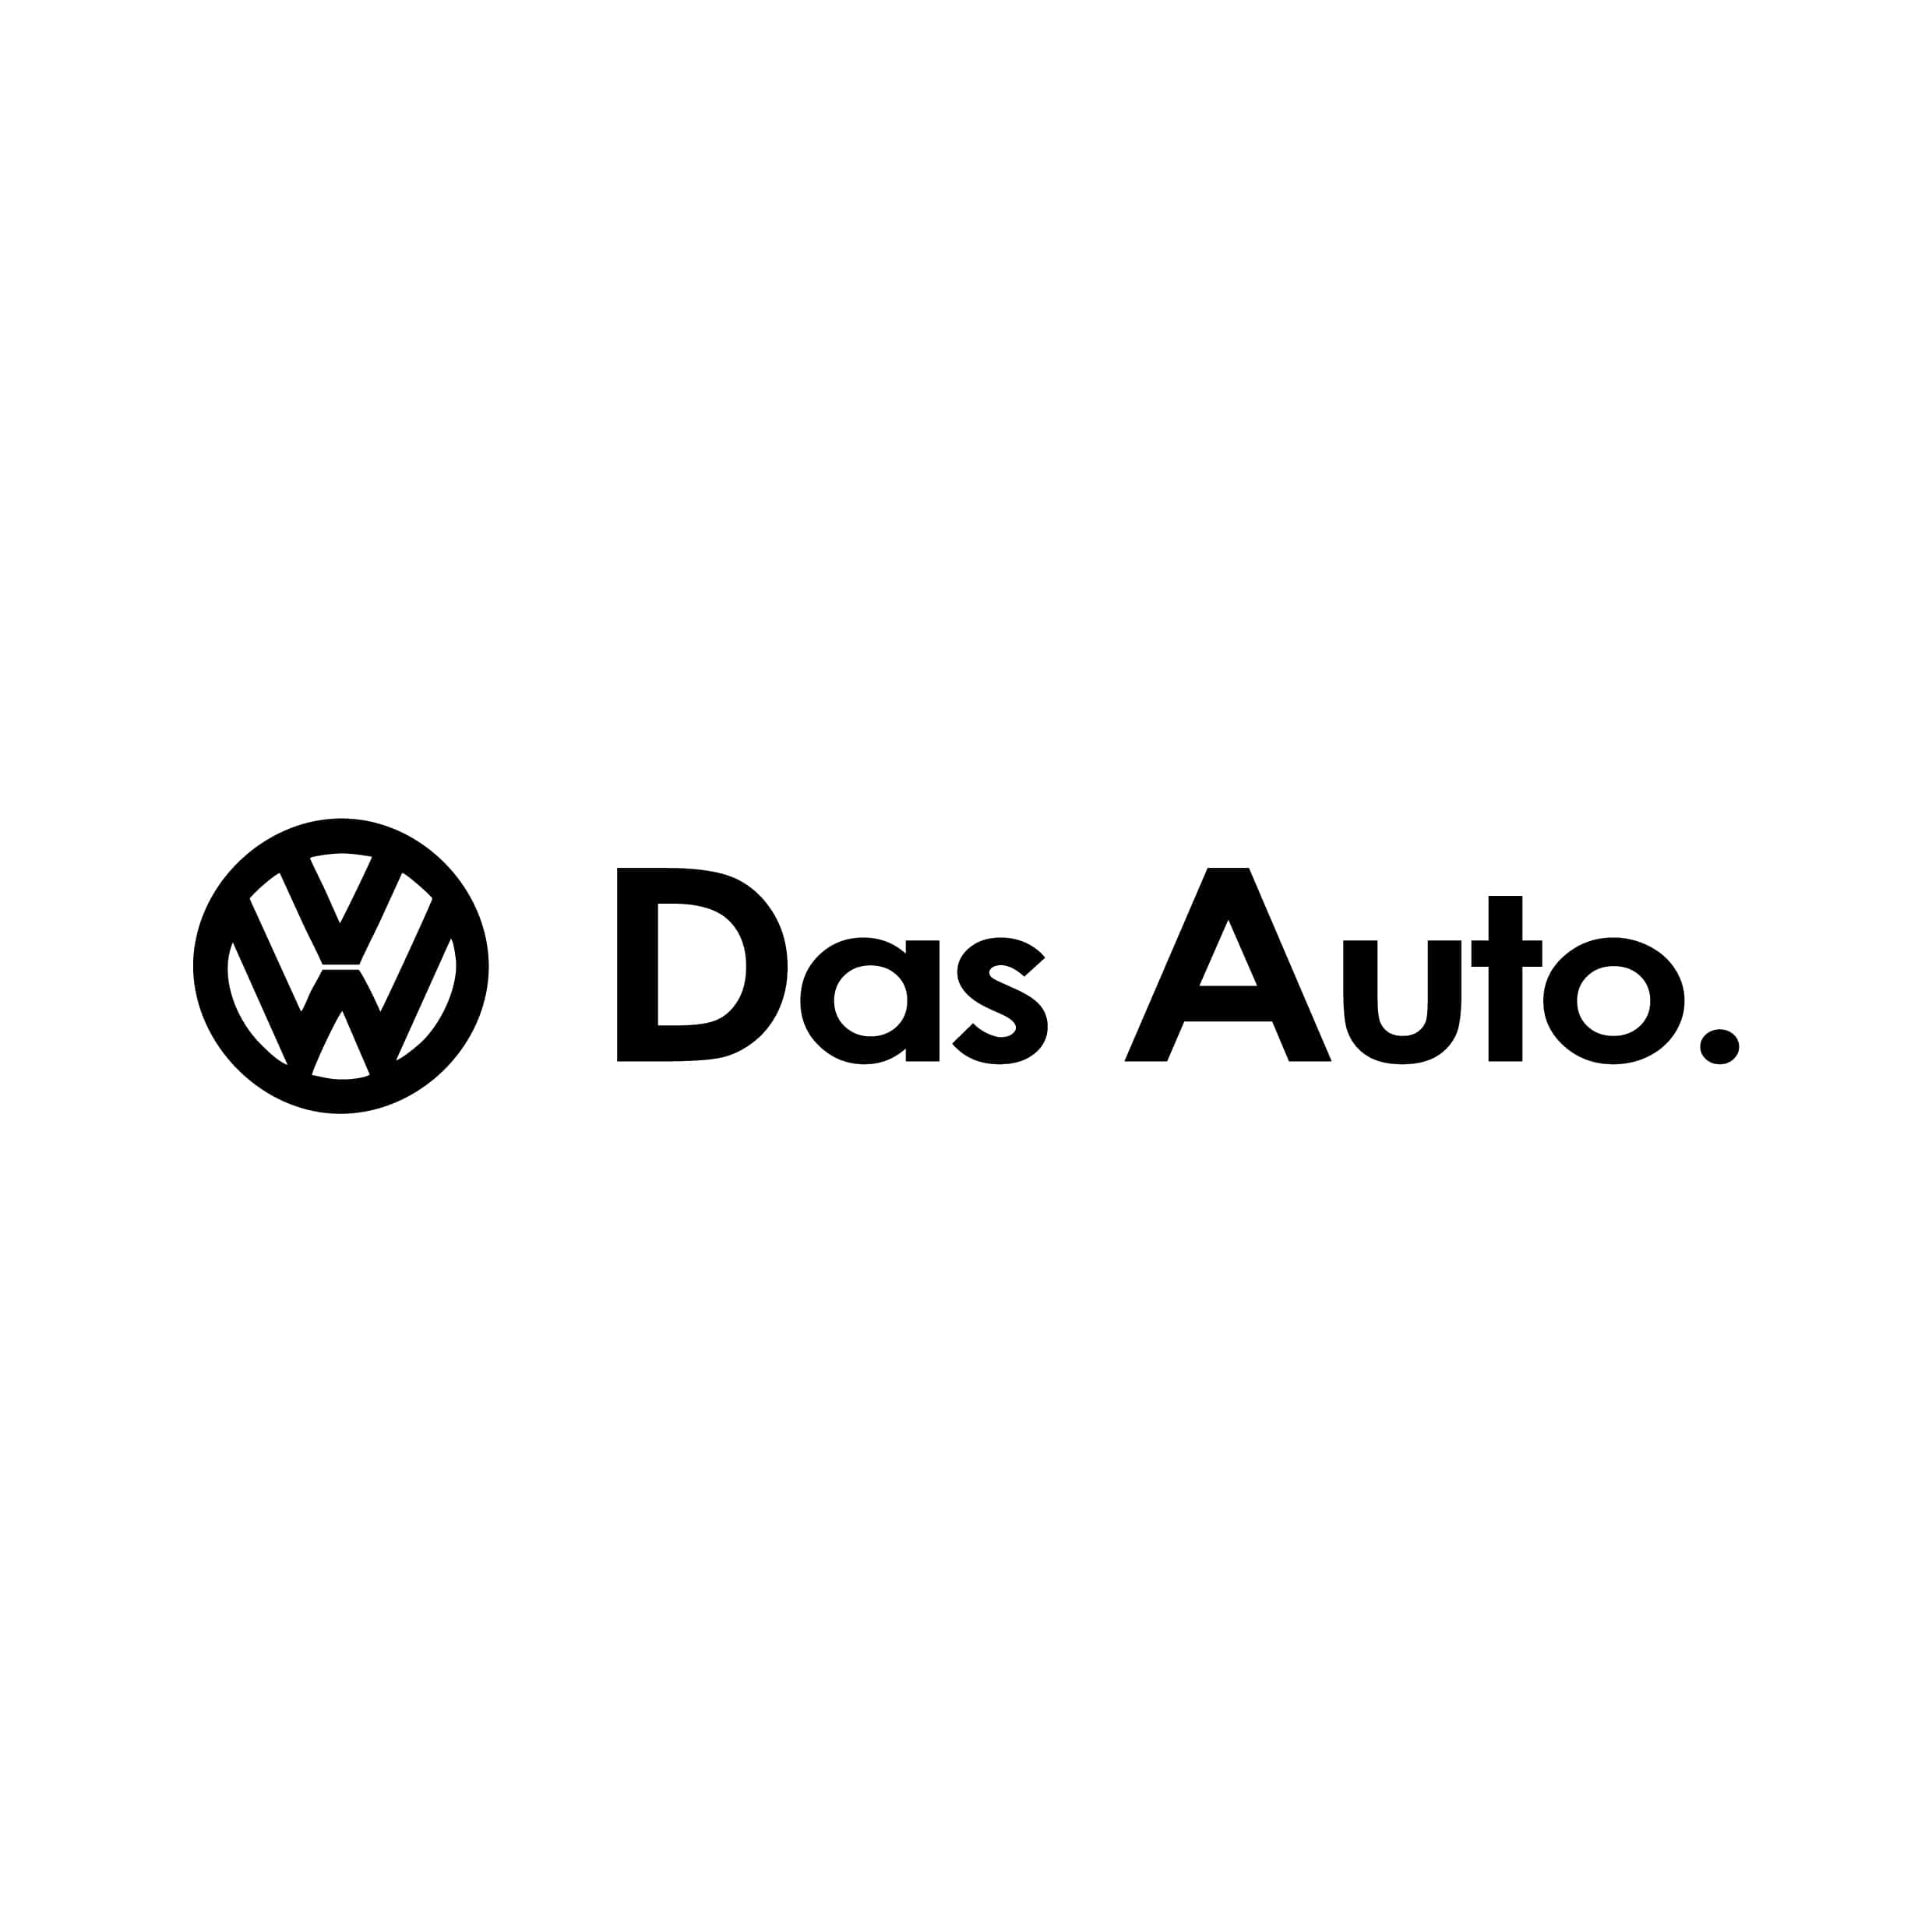 Stickers Volkswagen Das Auto - Autocollant voiture